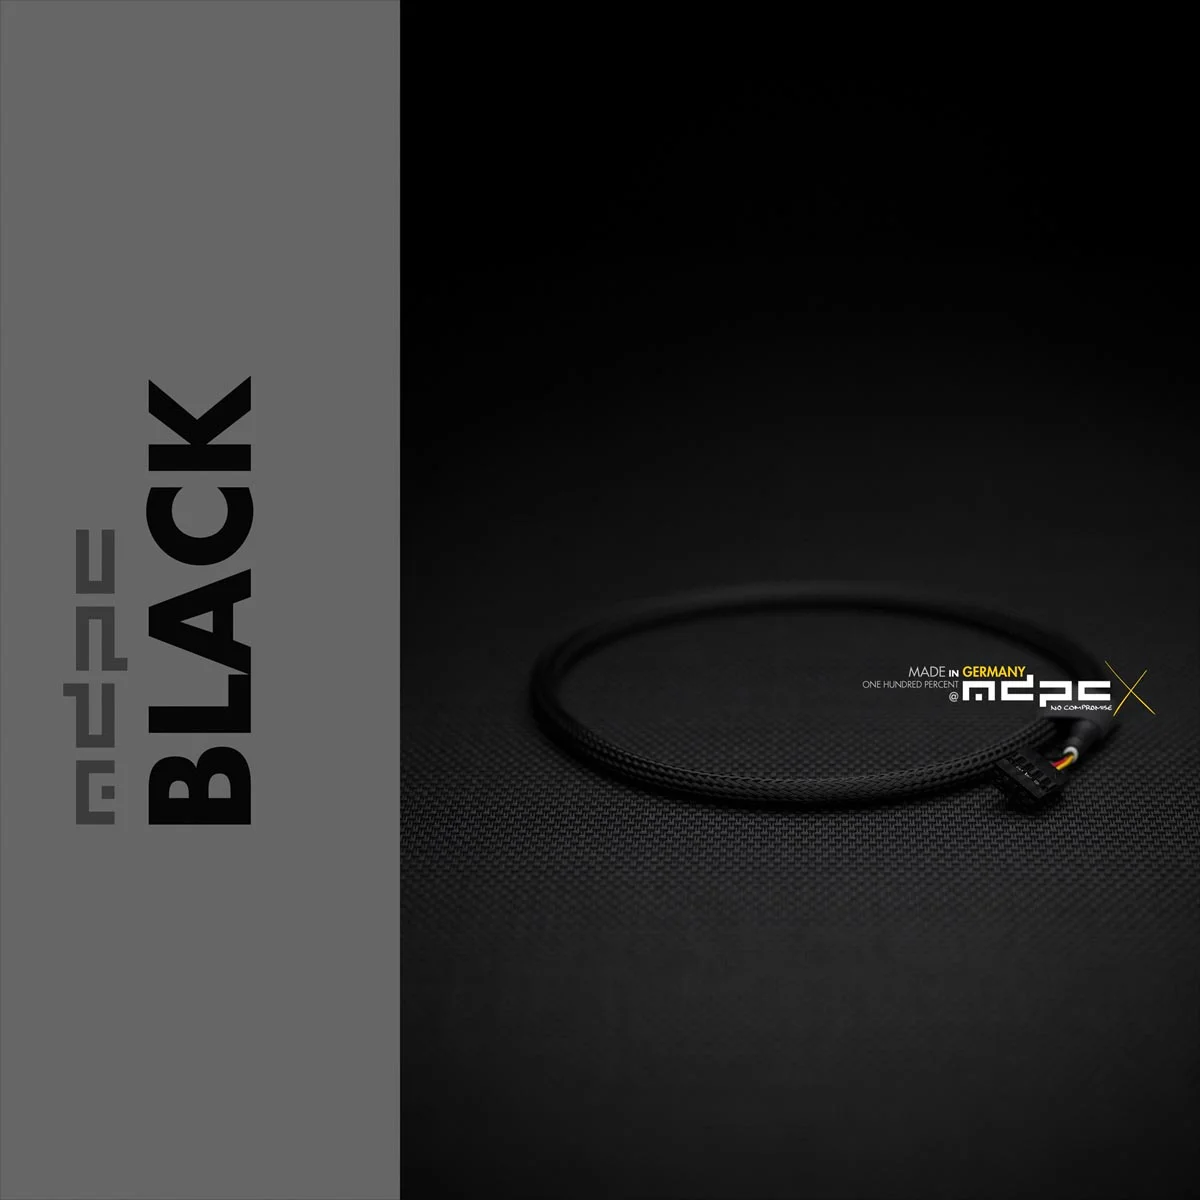 สายถัก Front-Panal-MDPC-x black cable sleeving